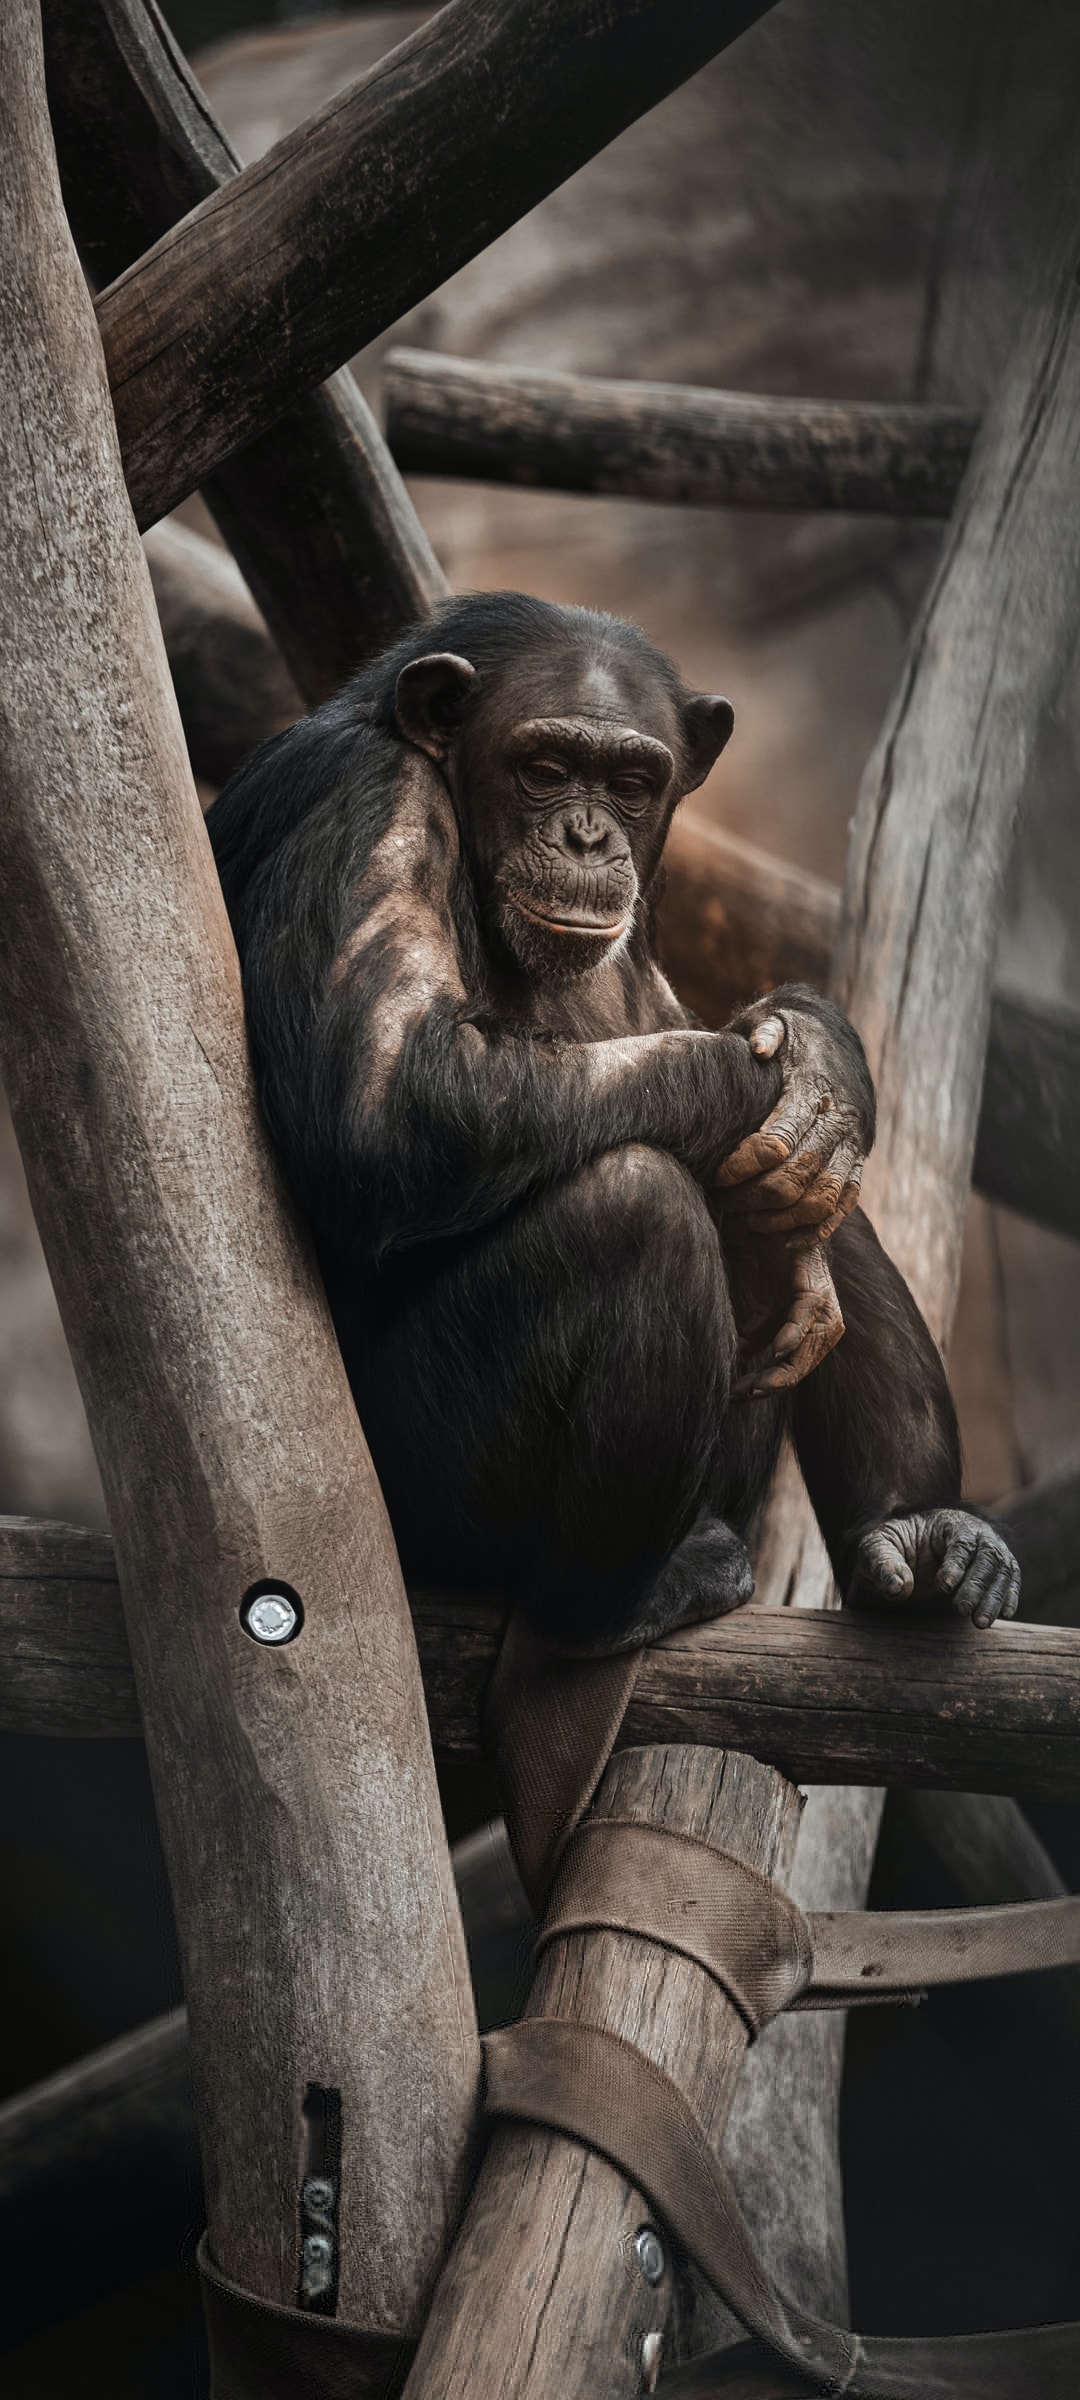 灵长类动物大猩猩沉默模样手机壁纸